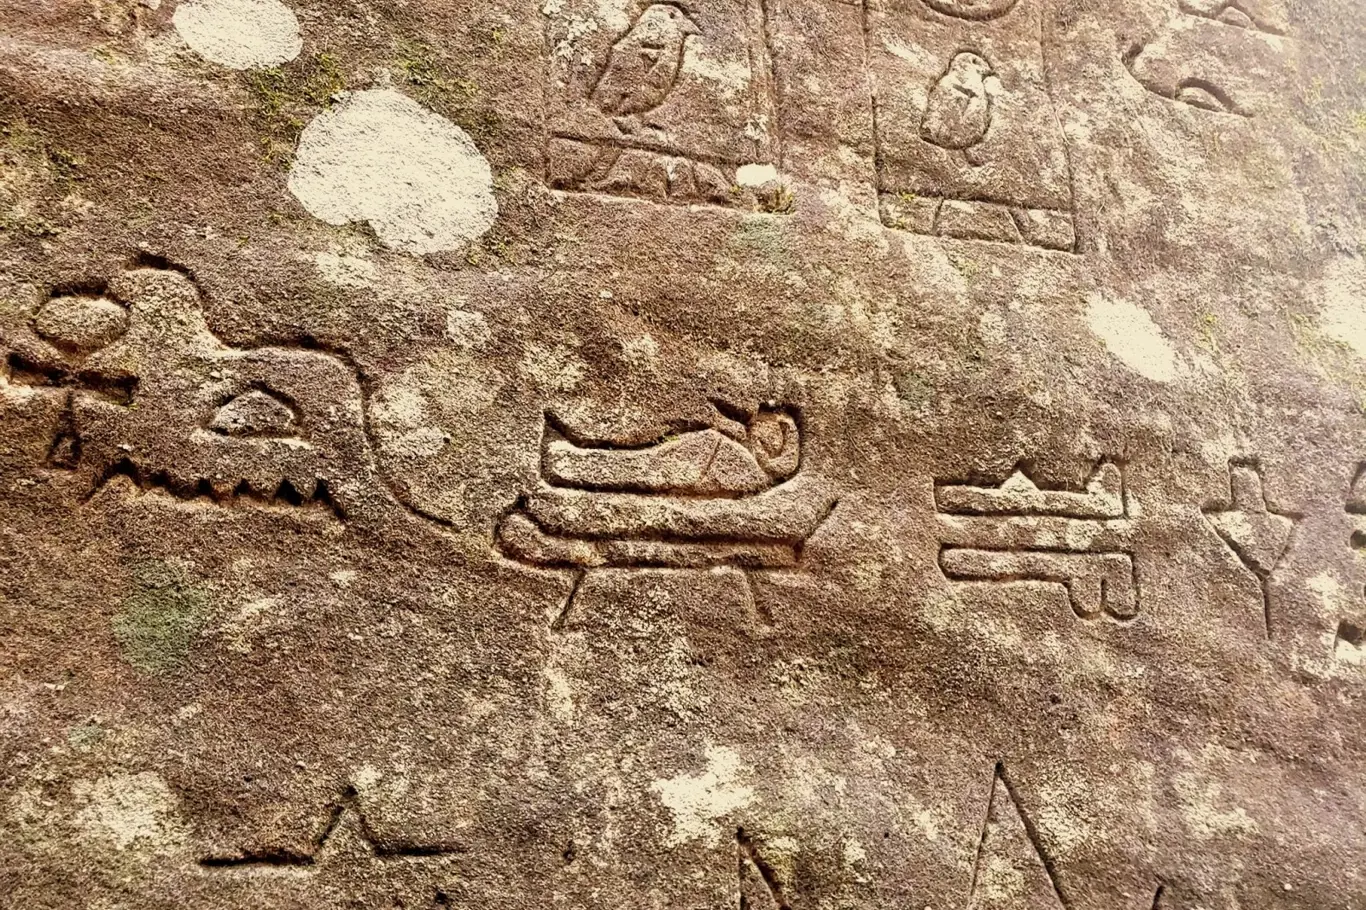 Místo se symboly Wadjeta, Hora, vody, kotníku a sarkofágu